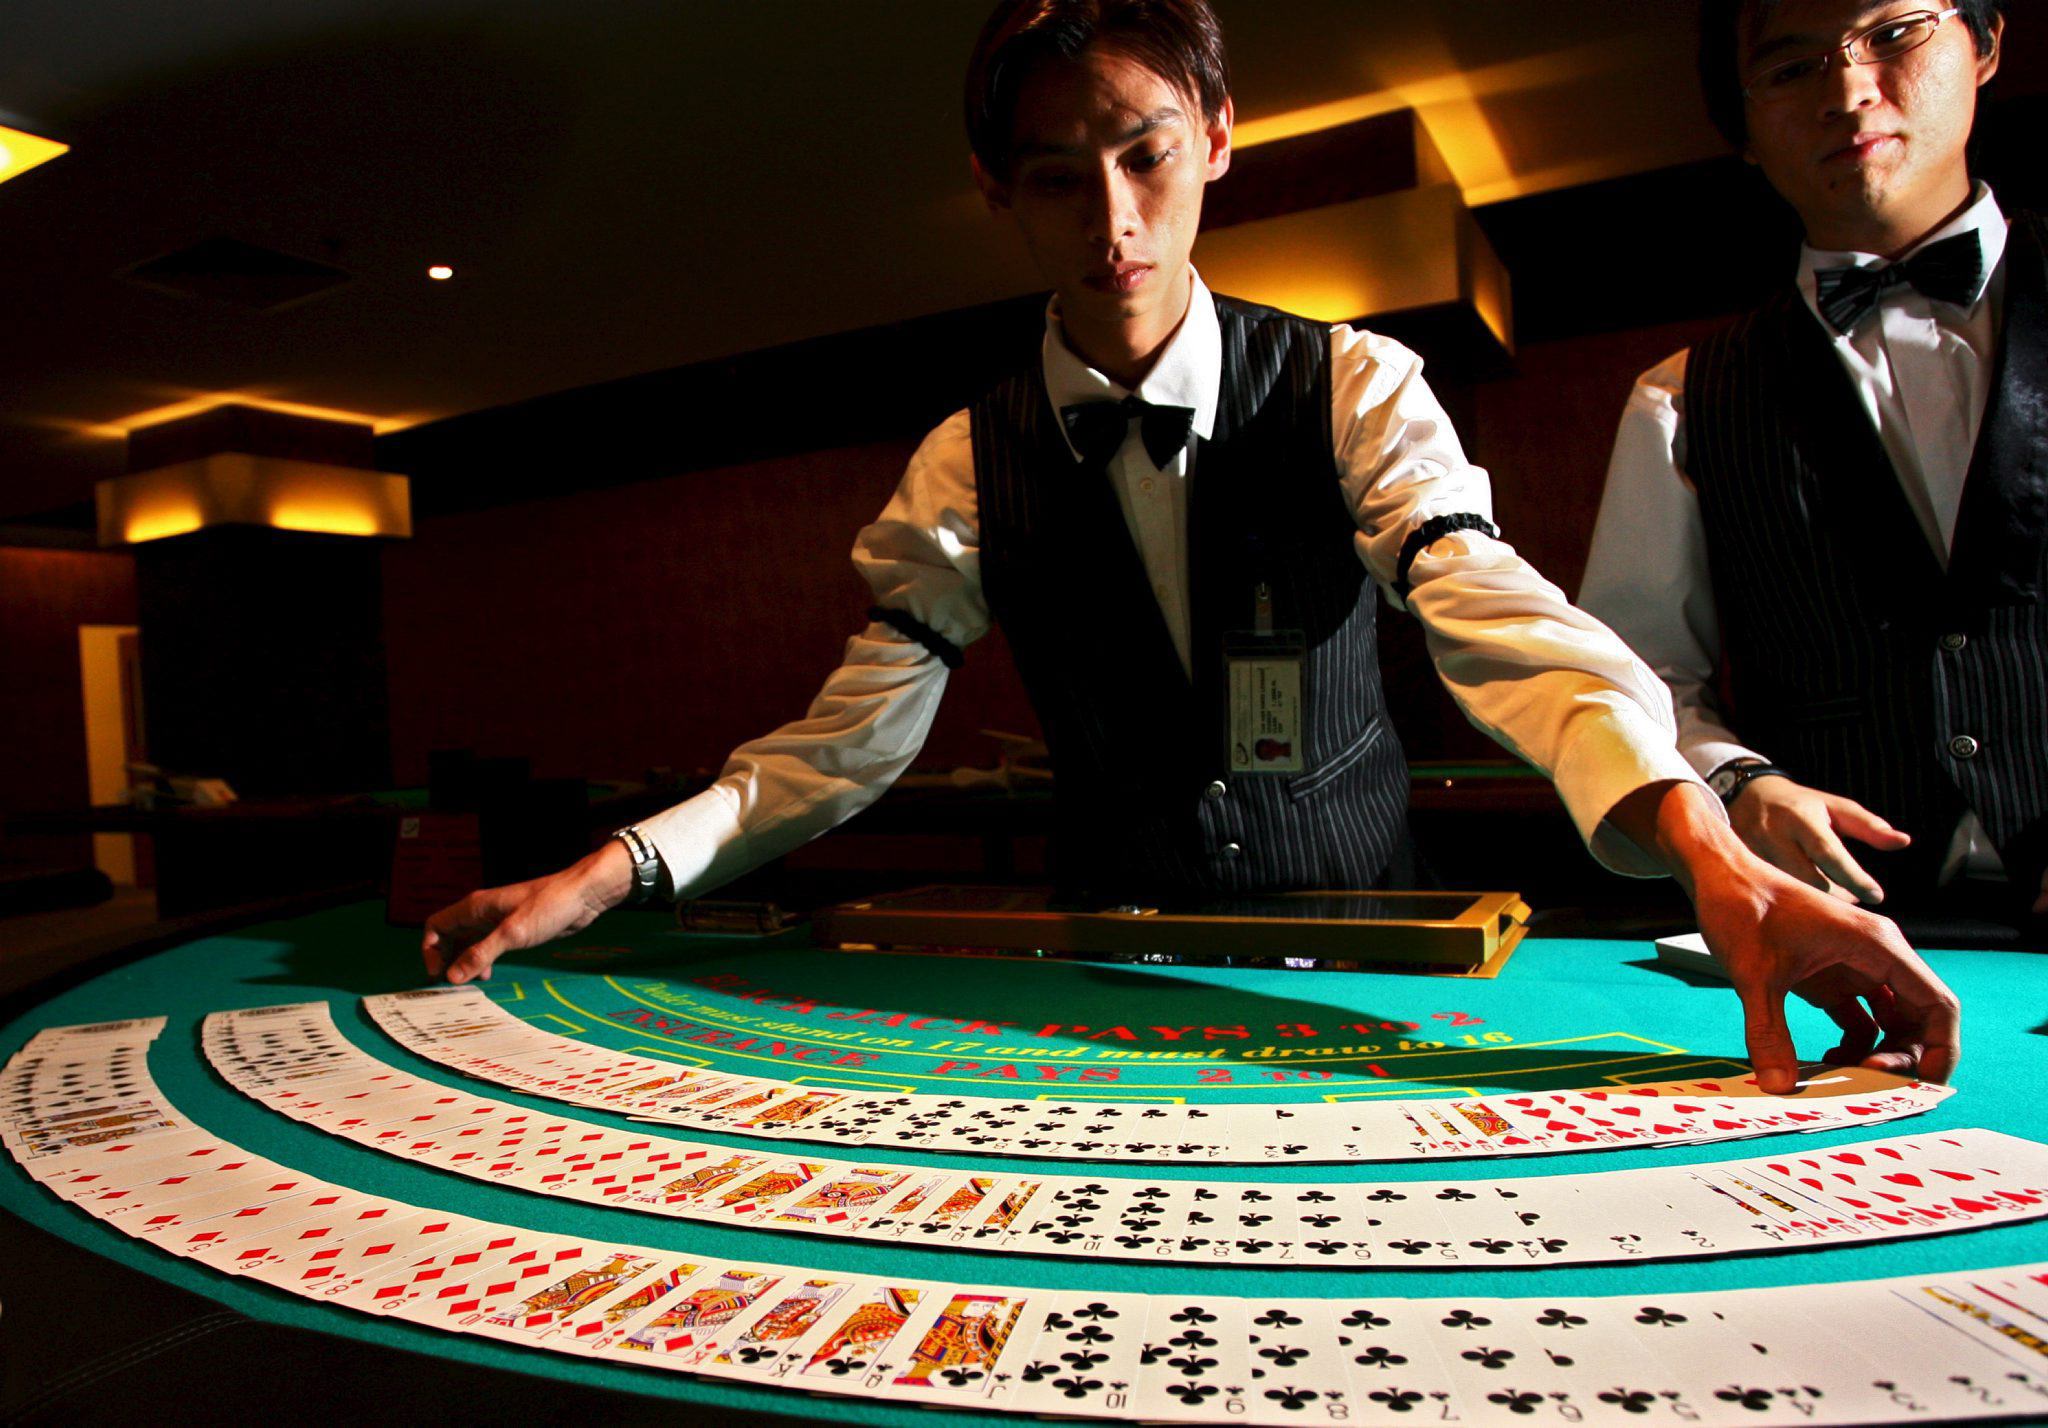 Азартными развлечениями. Казино. Мужчина в казино. Казино азарт. Азартный игрок казино.